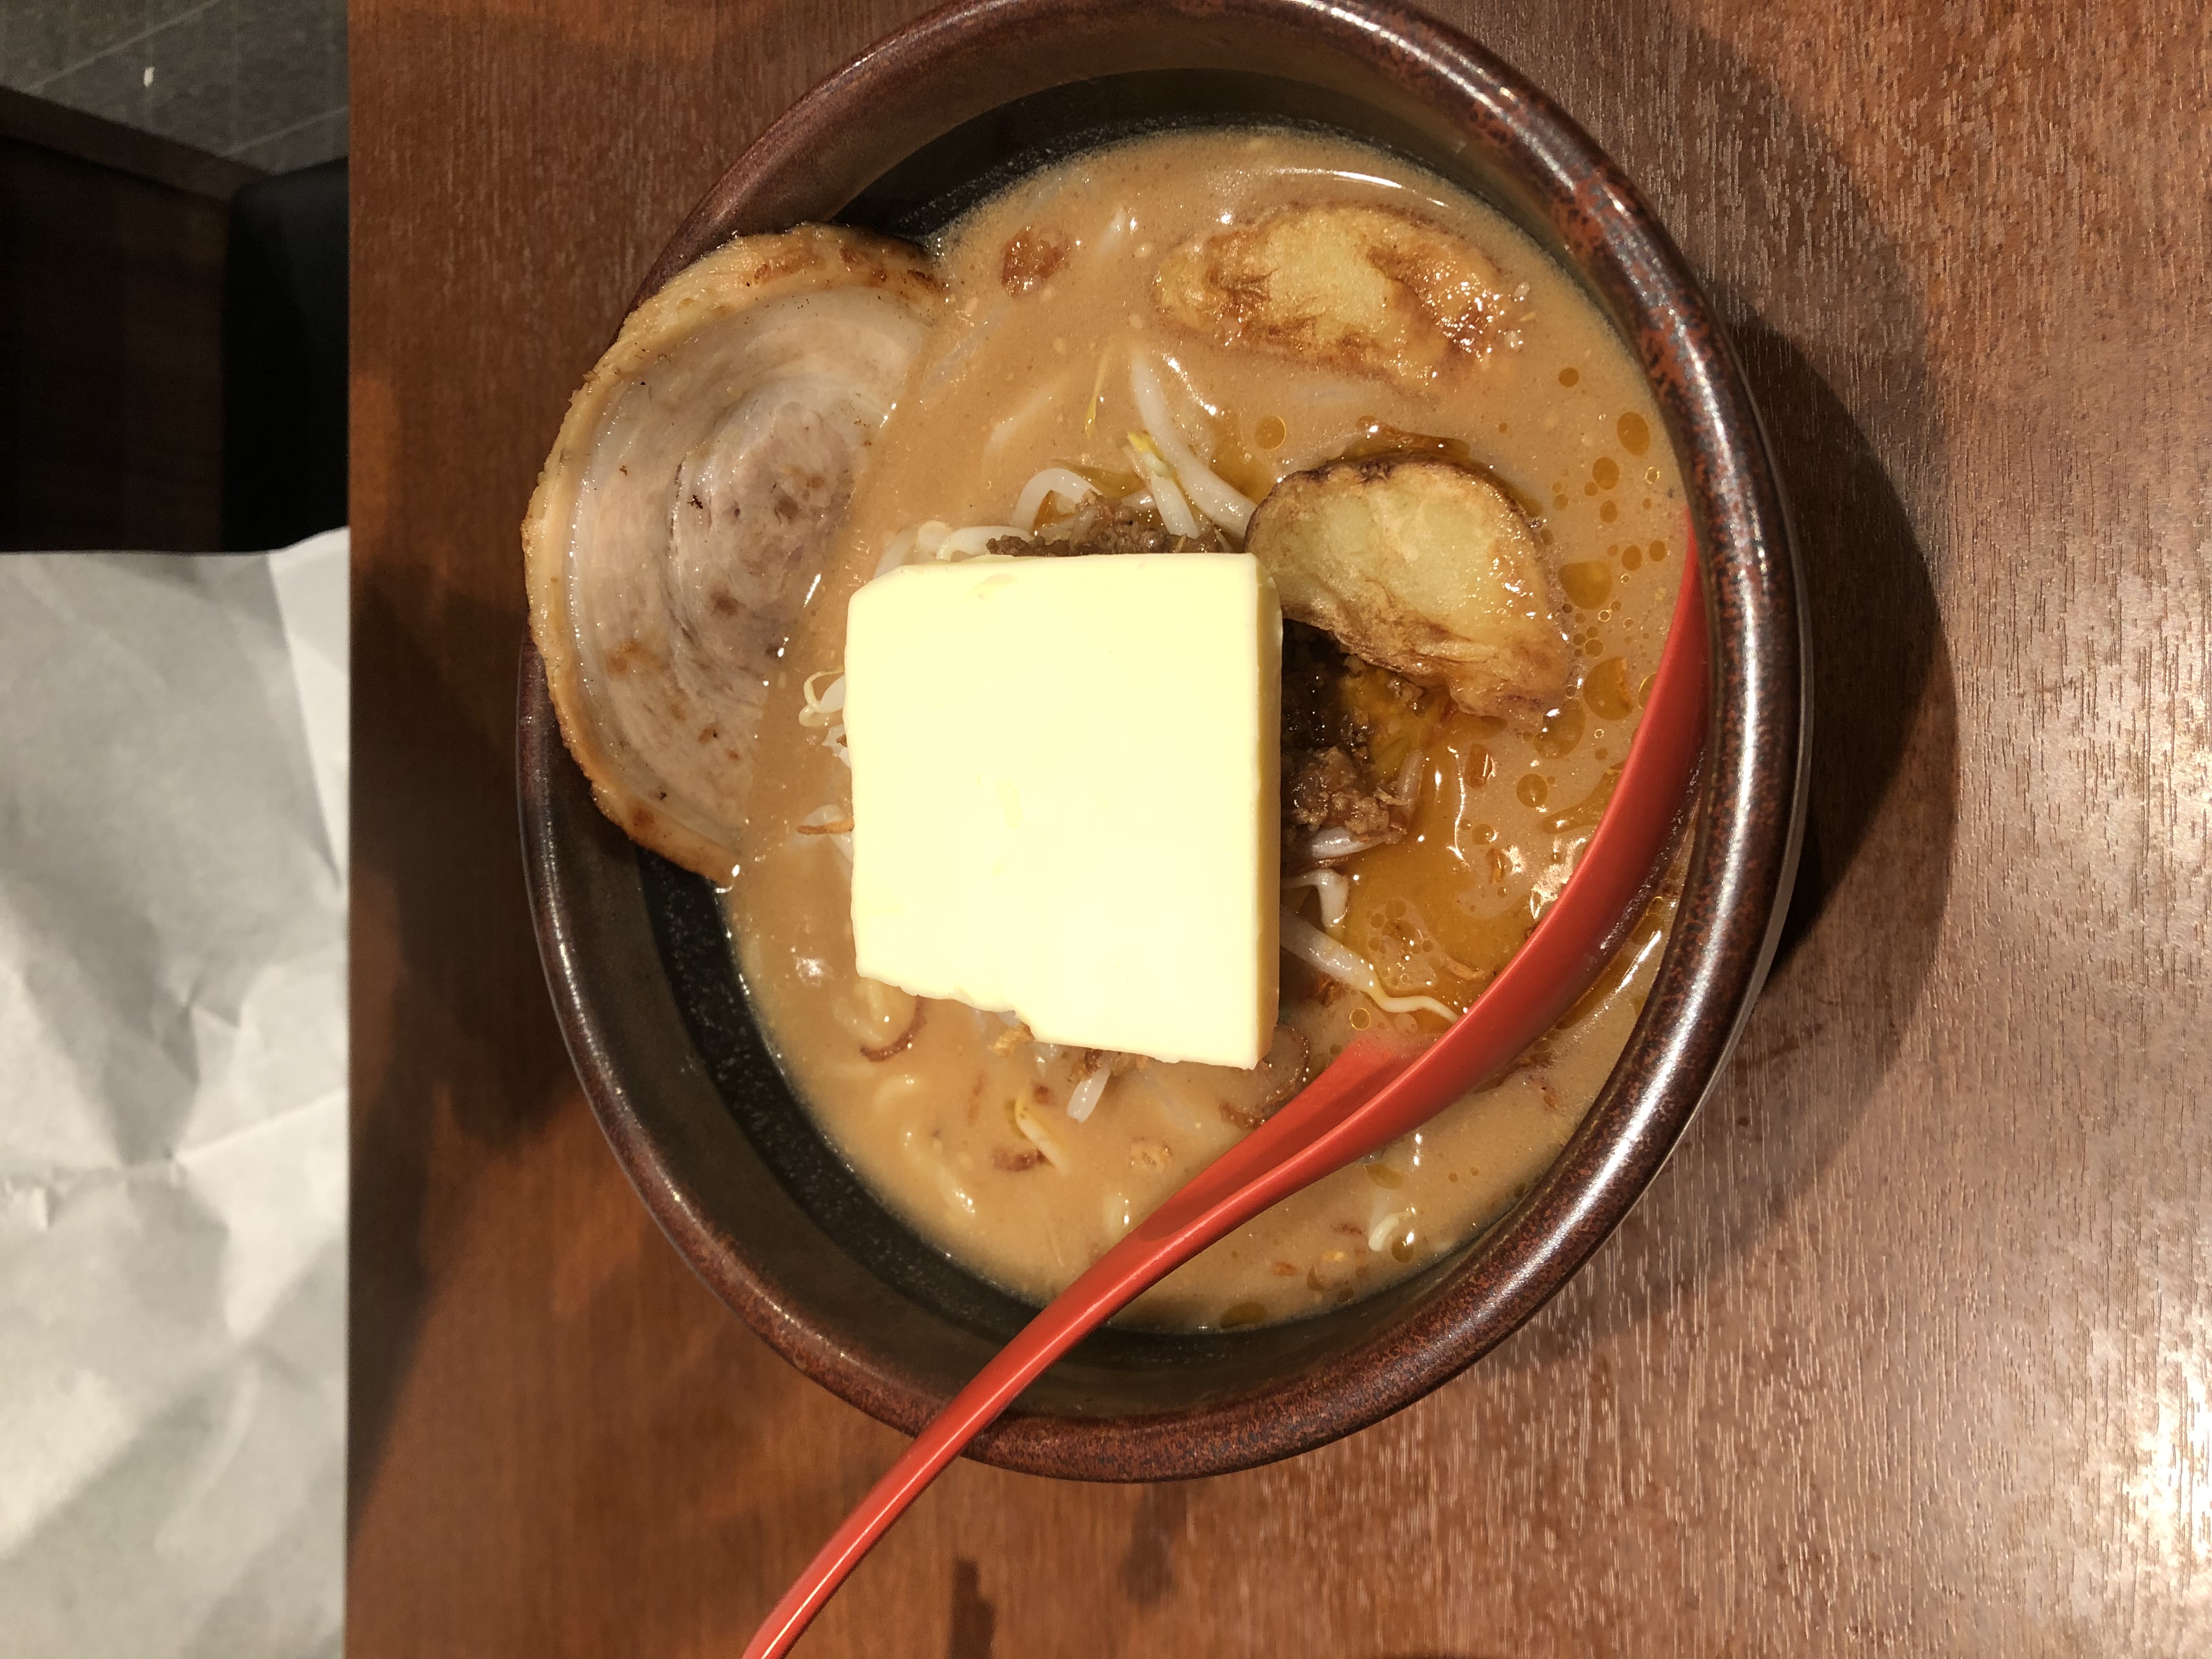 麺場 田所商店のスパイス系味噌らーめん3種食べ比べの試食